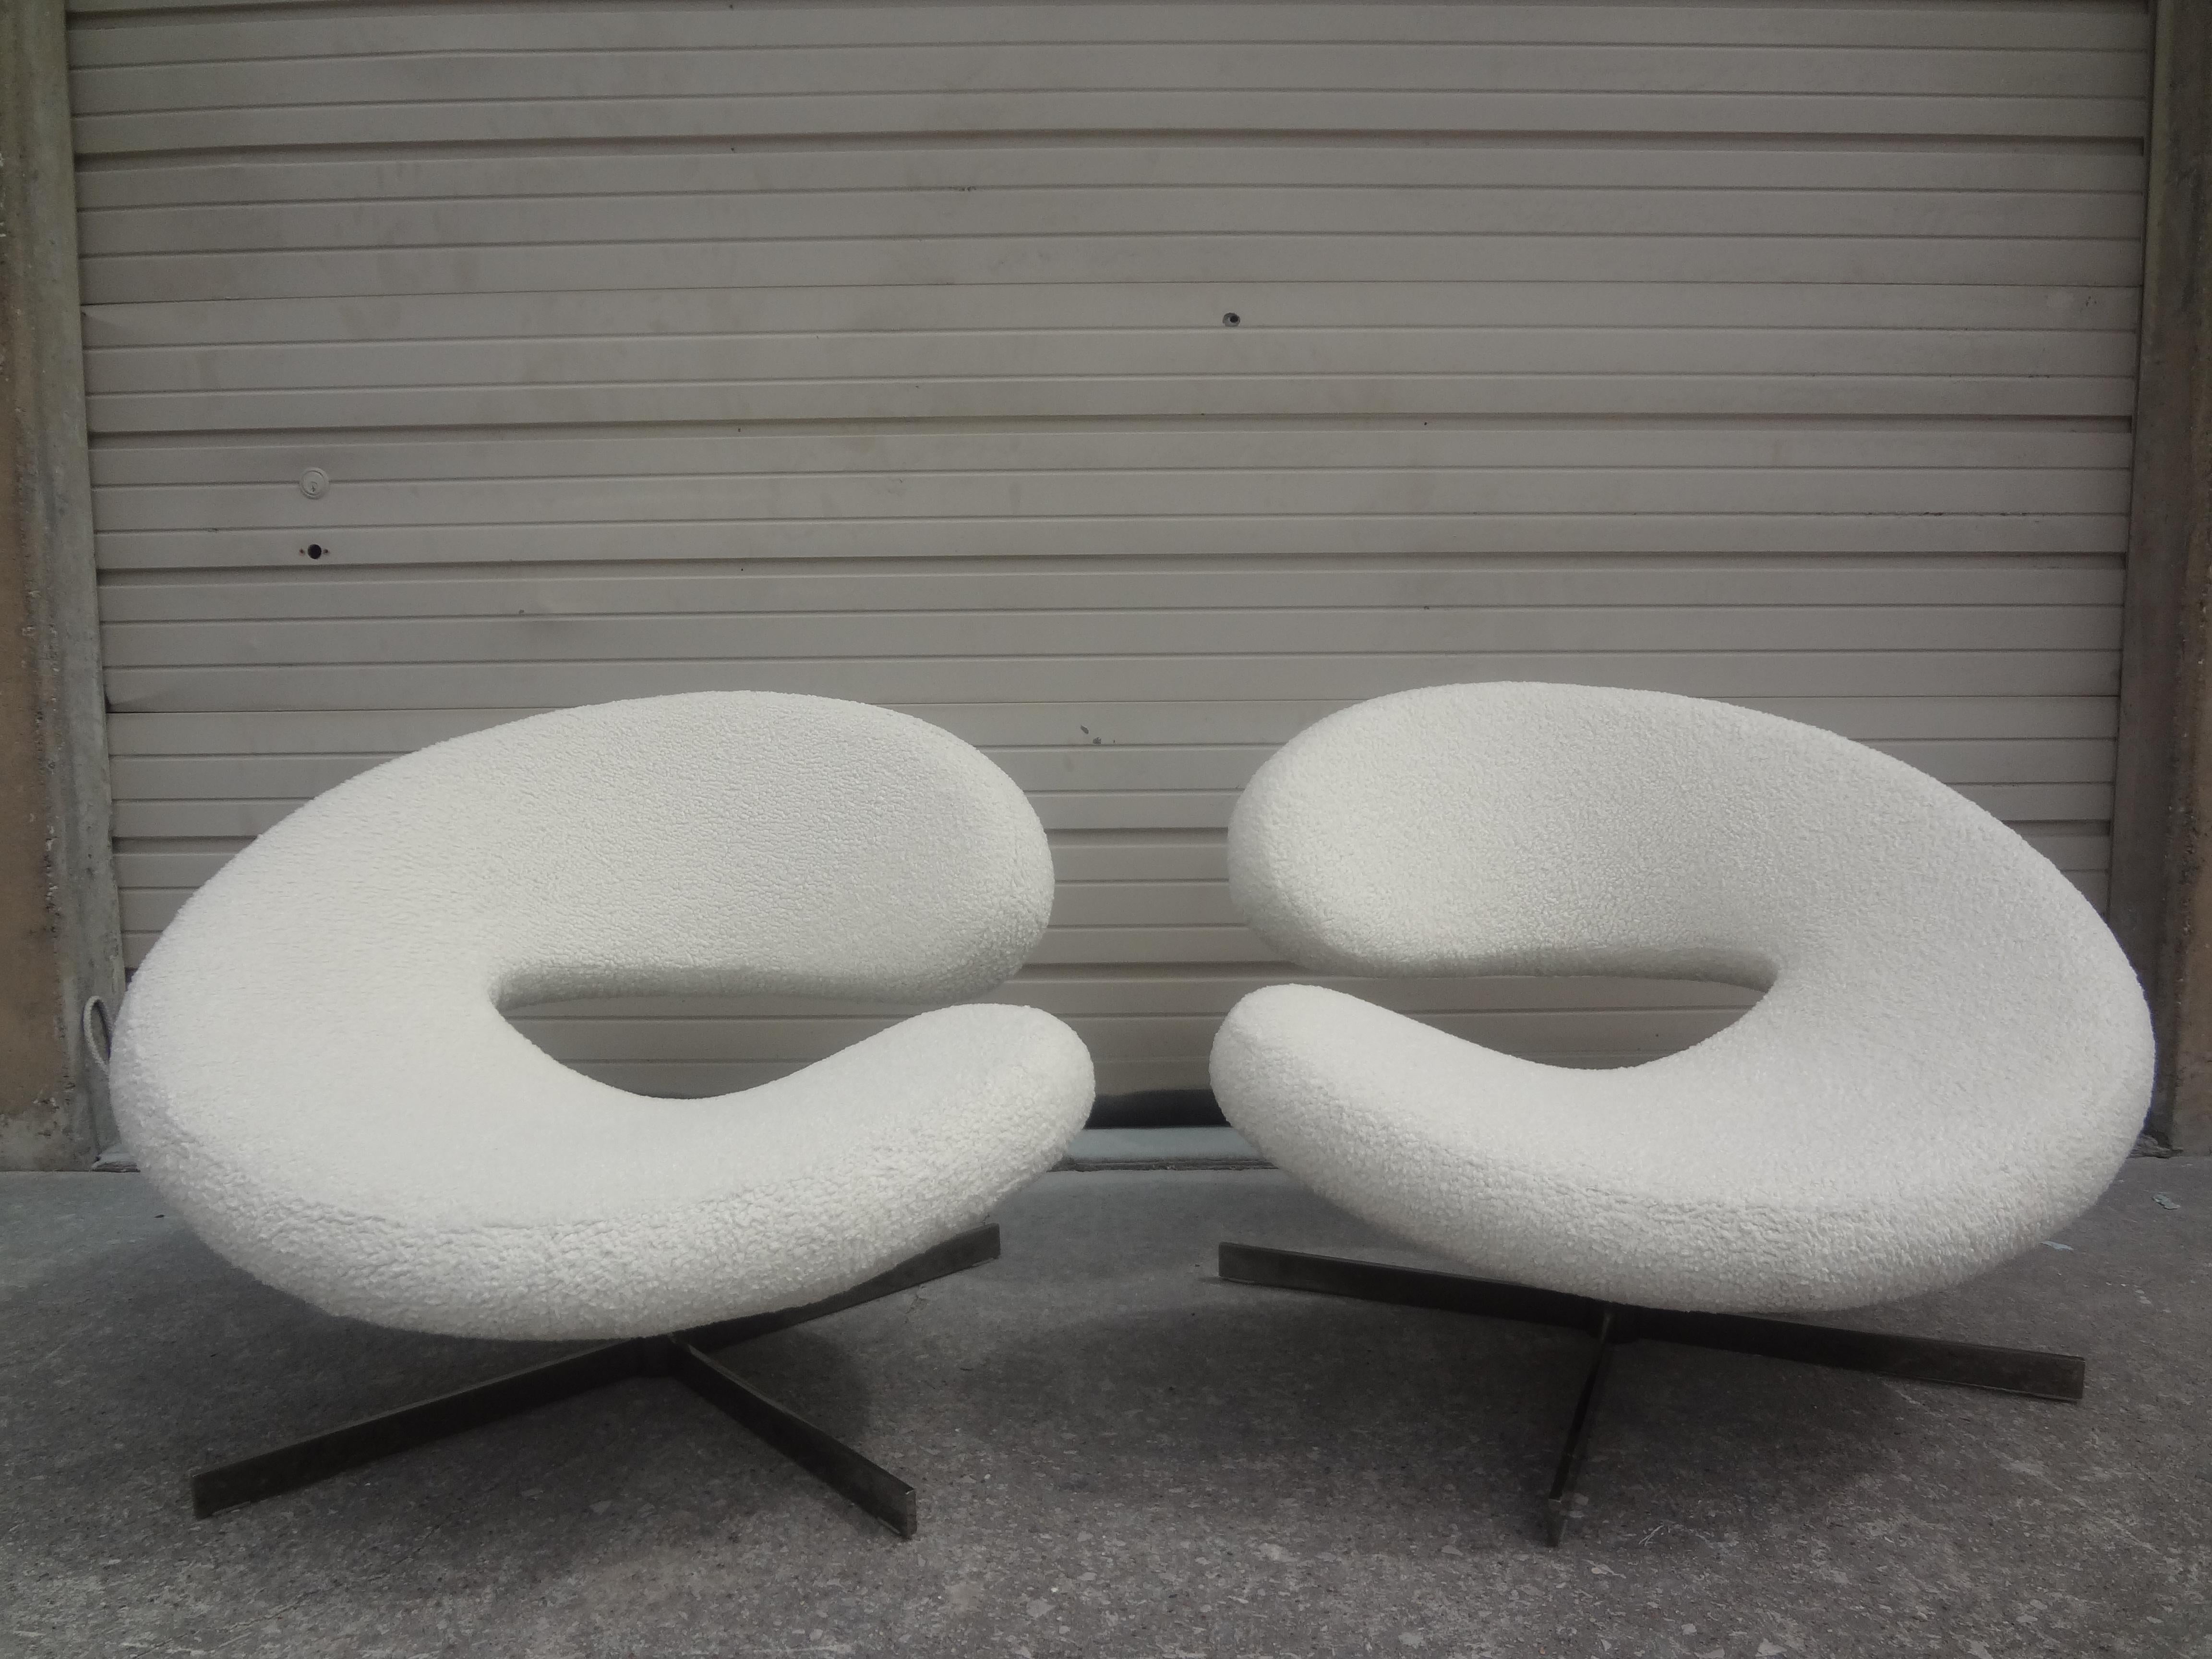 Sensationnelle paire de fauteuils pivotants sculptés de style moderniste français par Roche Bobois. Ces étonnantes chaises pivotantes postmodernes sont un modèle très inhabituel, avec des bases chromées et une vraie paire, gauche et droite. Ces